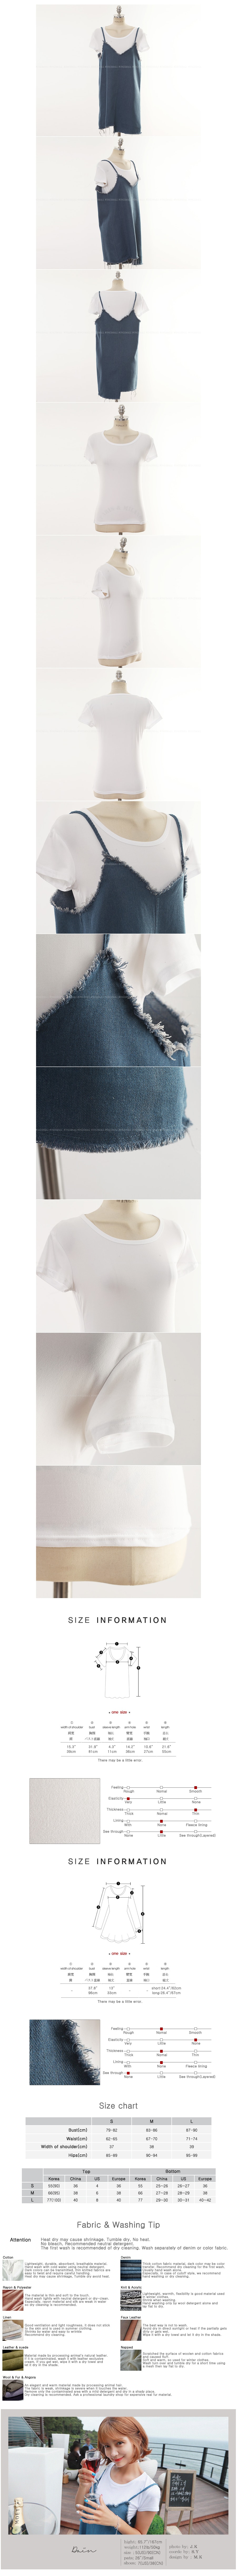 韩国正品 MAGZERO 牛仔连衣裙白色T恤两件套 均码One Size(S-M) [免费配送]